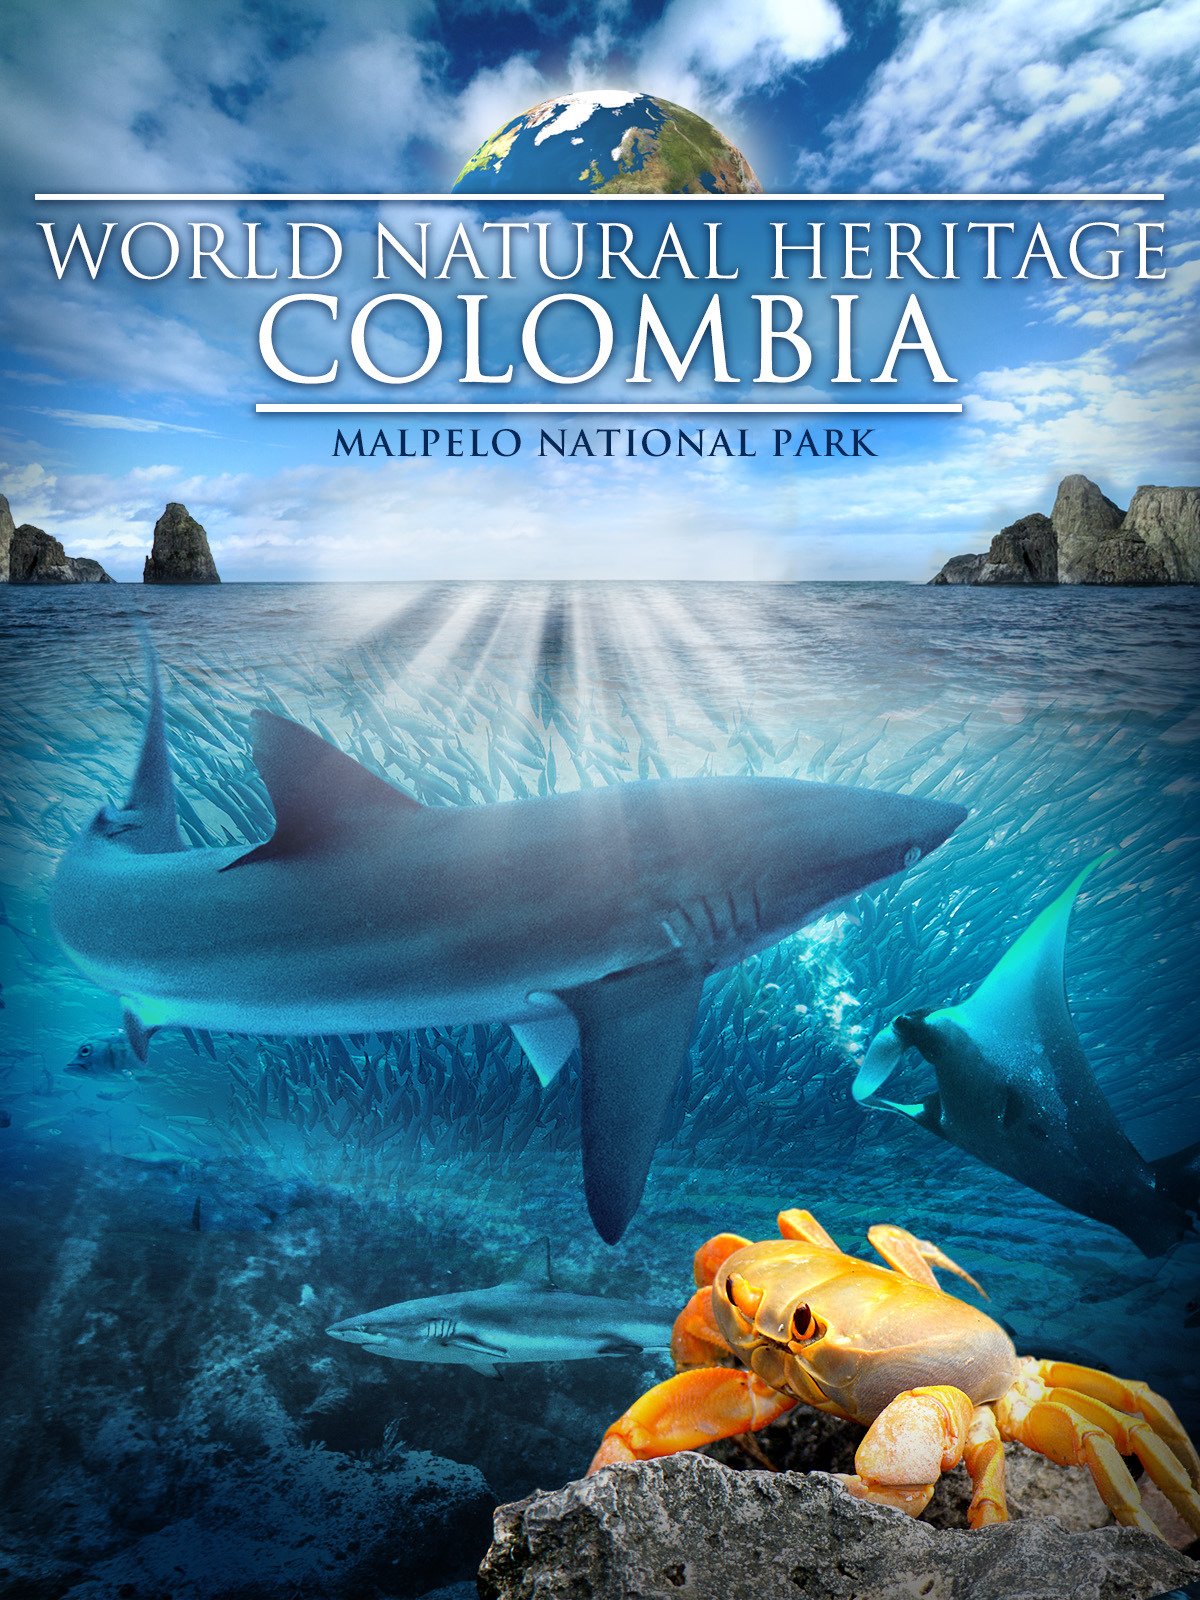 Всесвітня природна спадщина. Колумбія: Природний заповідник Малпело